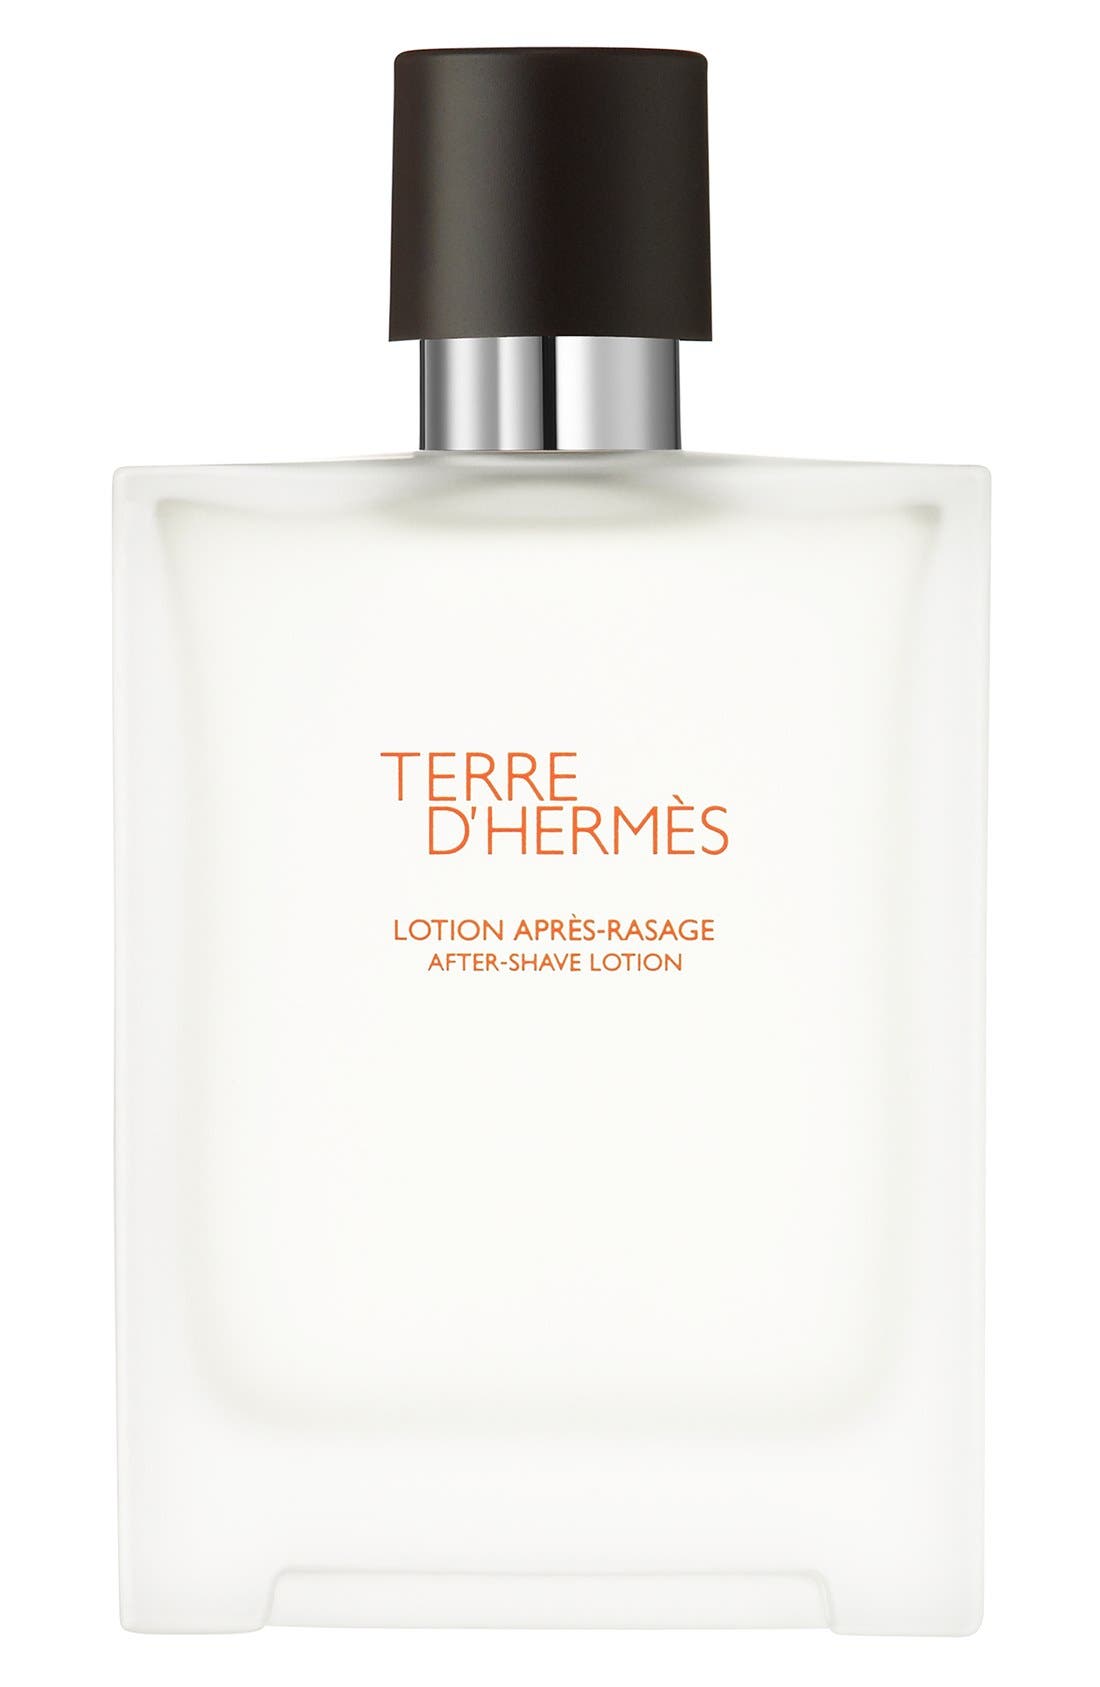 EAN 3346131400119 product image for TERRE D HERMES Hermes Terre d'Hermes - After-shave lotion, Size 3.3 Oz at Nordst | upcitemdb.com